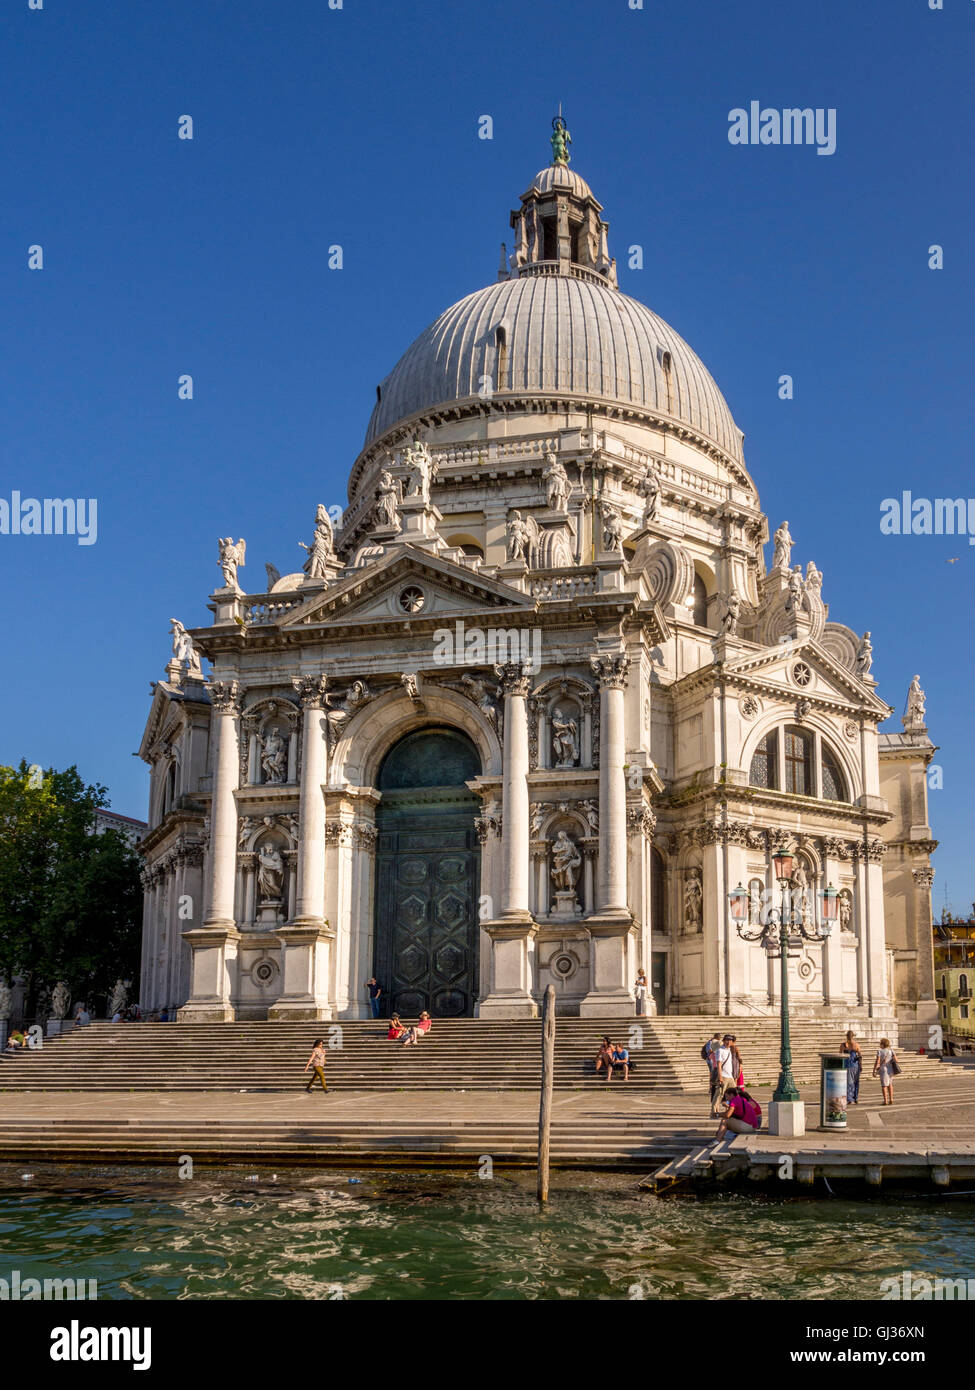 Fassade der Kirche Santa Maria della Salute, mit den Canal im Vordergrund. Venedig, Italien. Stockfoto